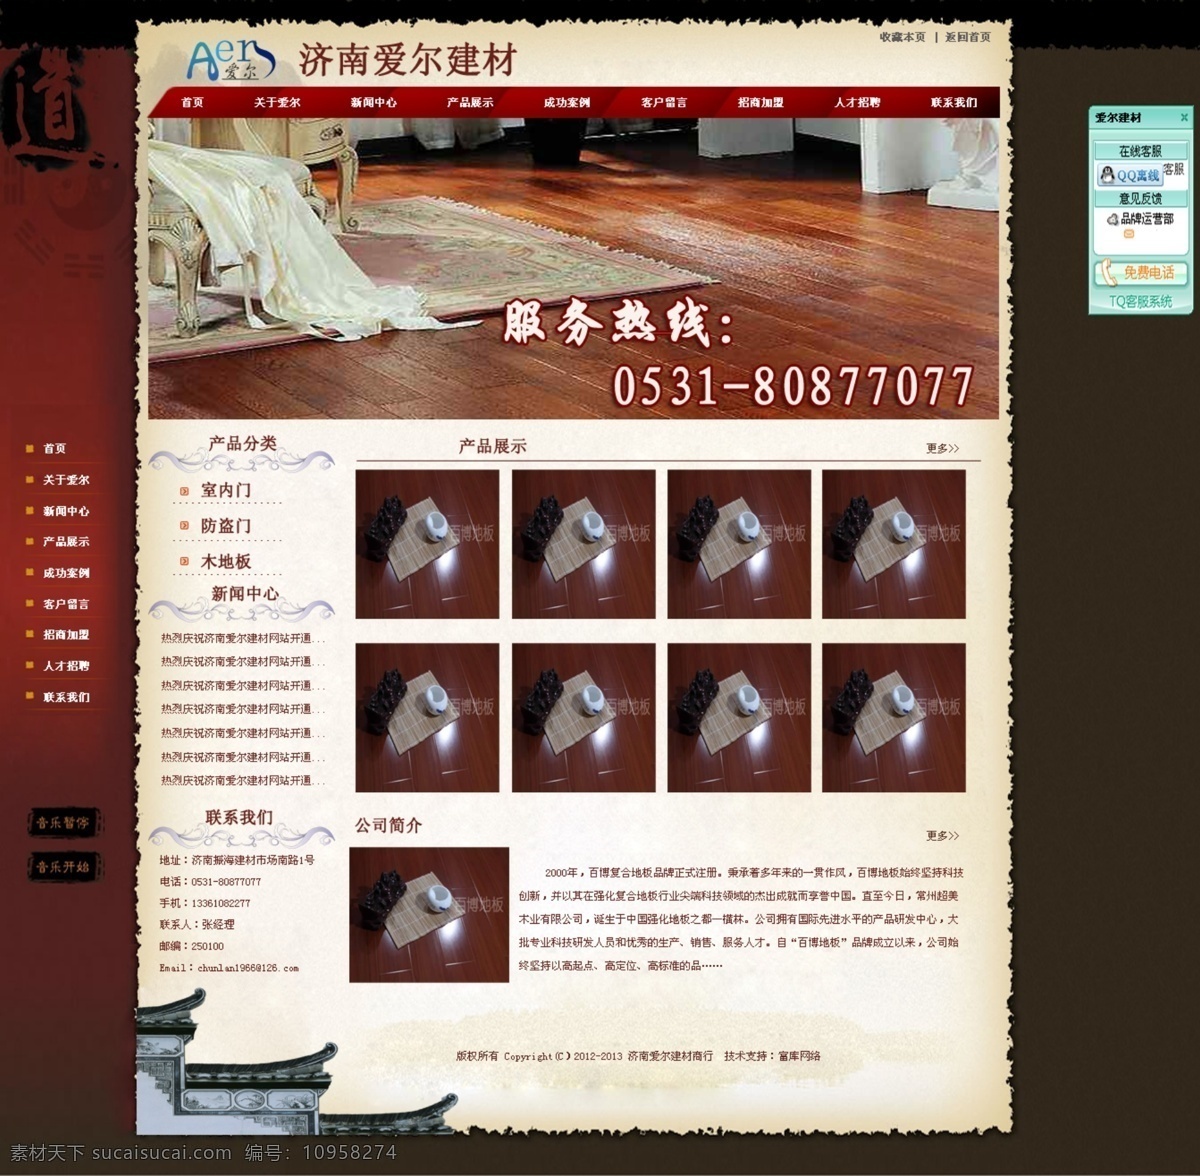 地板 建材 网页模板 网站 源文件 中文模板 类 效果图 模板下载 网站设计 家居装饰素材 室内设计